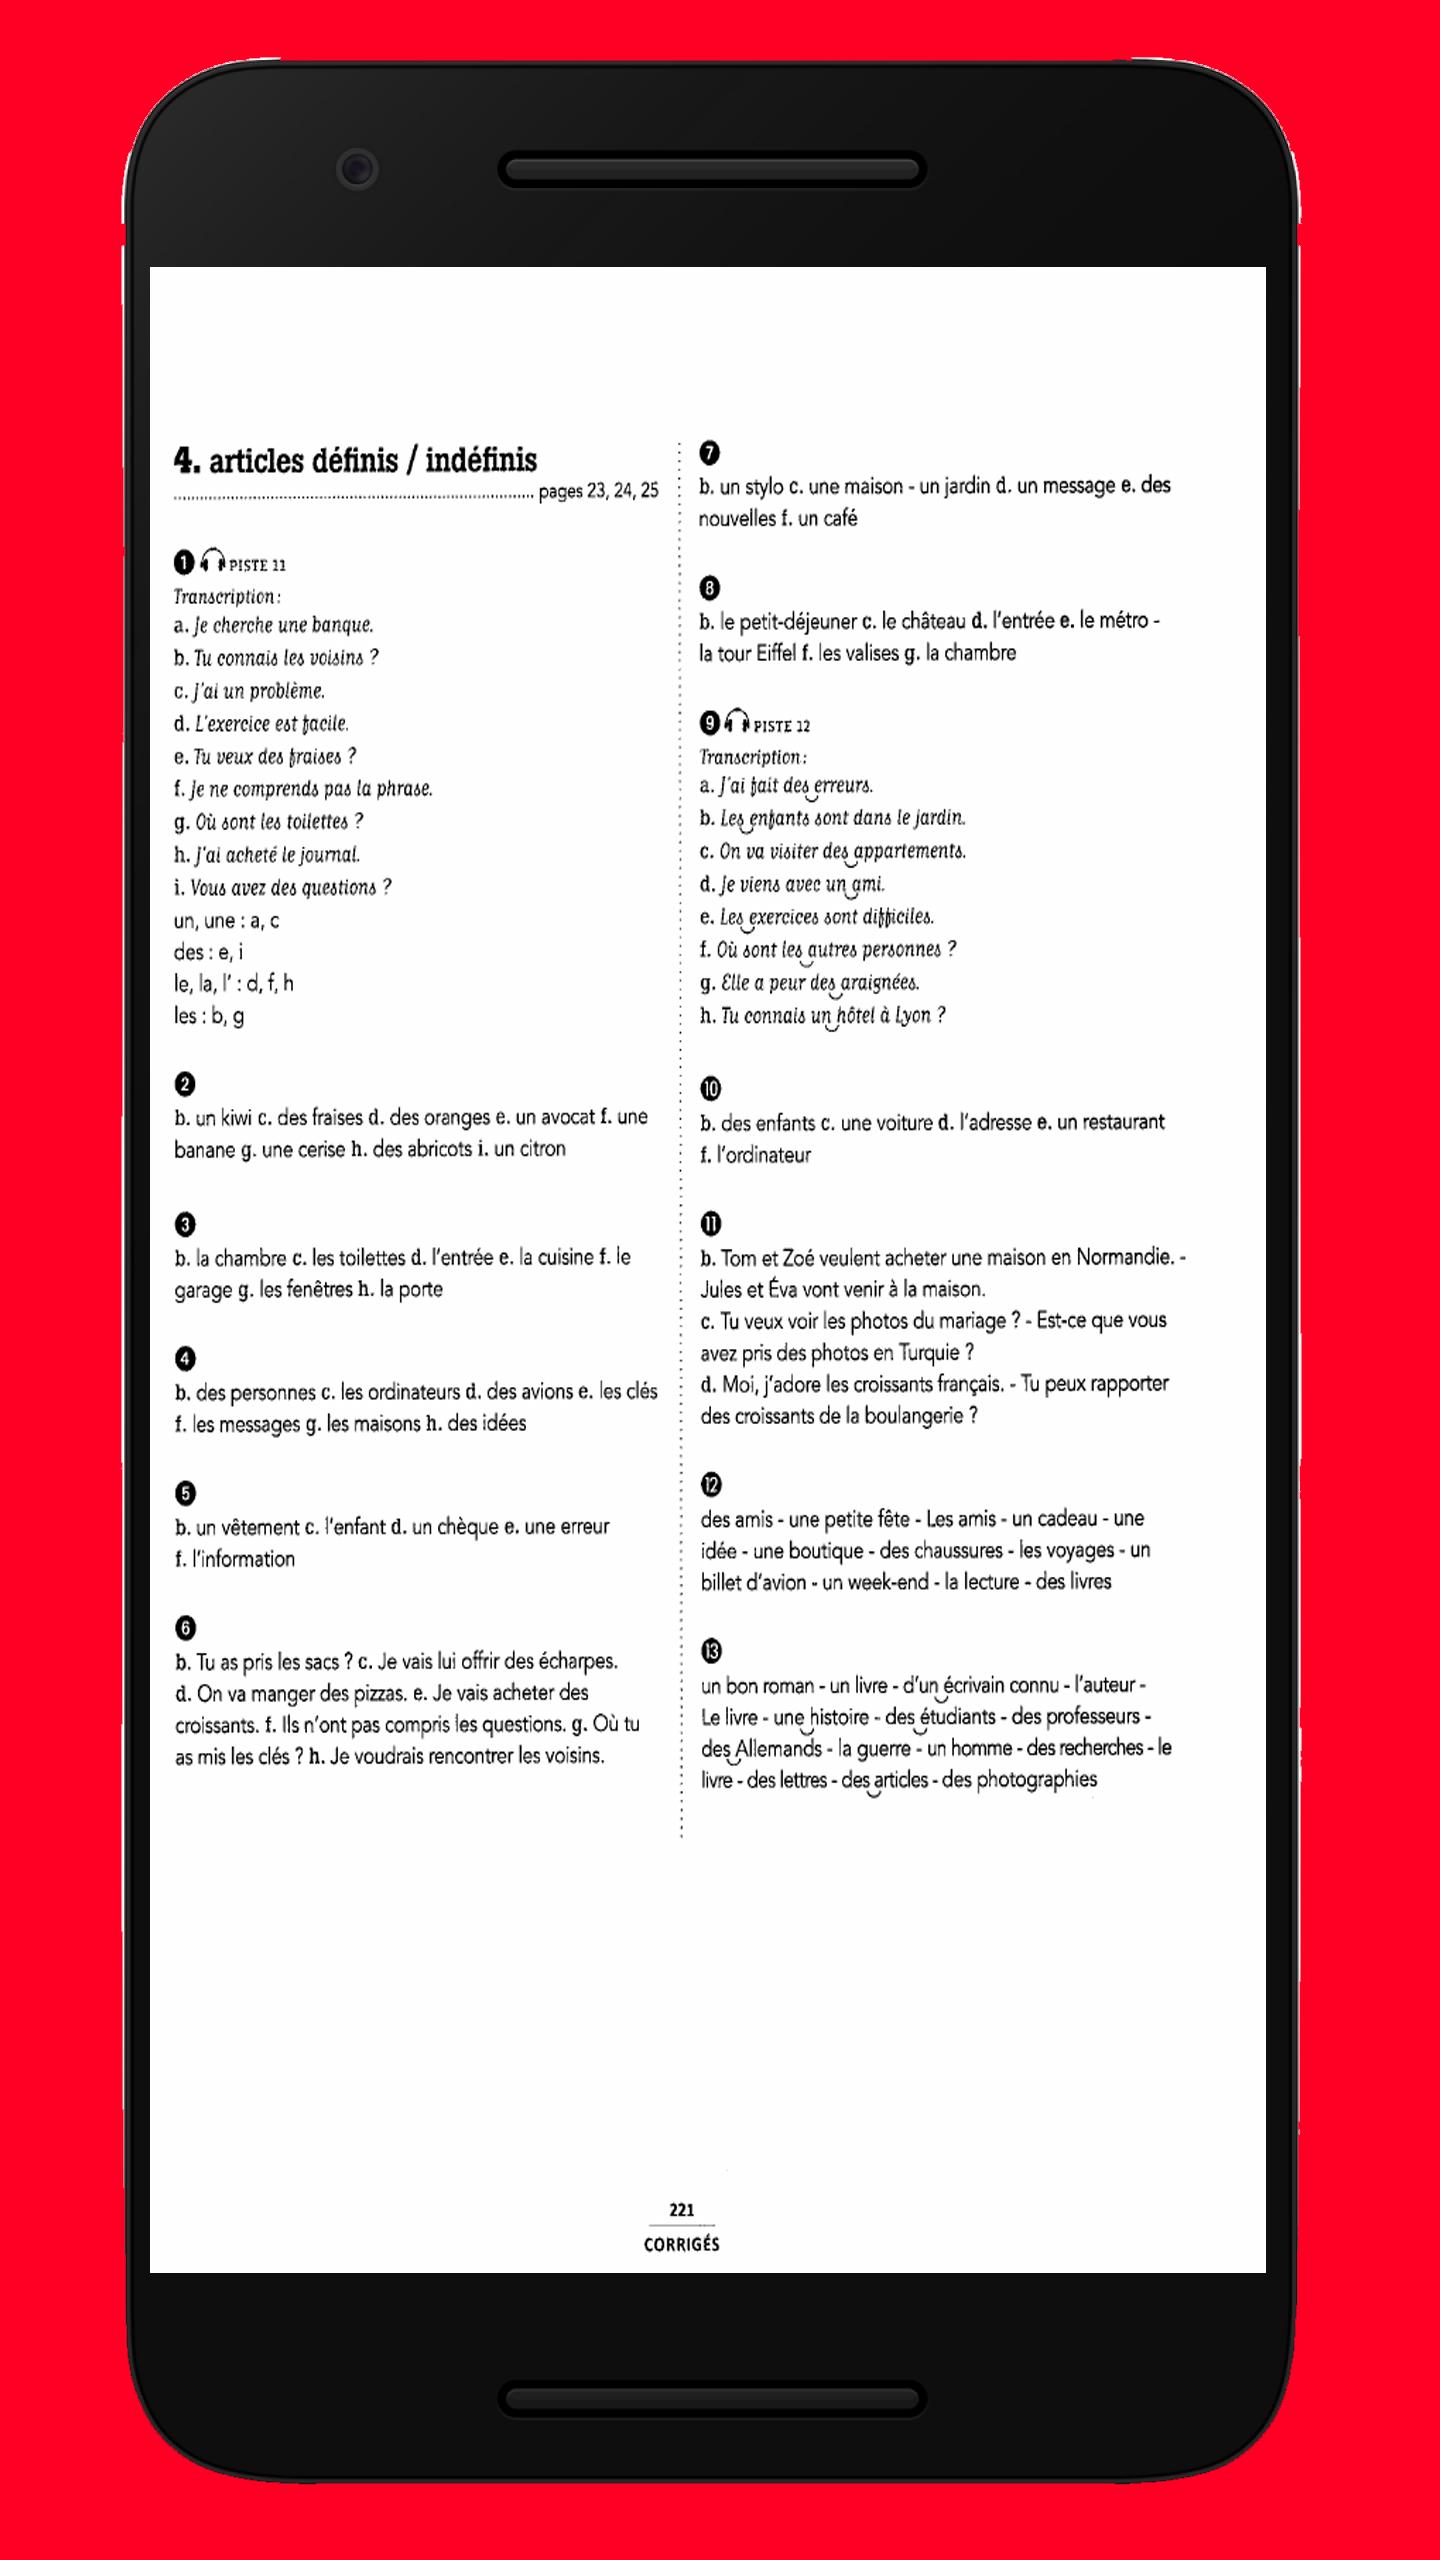 Grammaire essentielle du français niveau A1 A2 for Android - APK Download